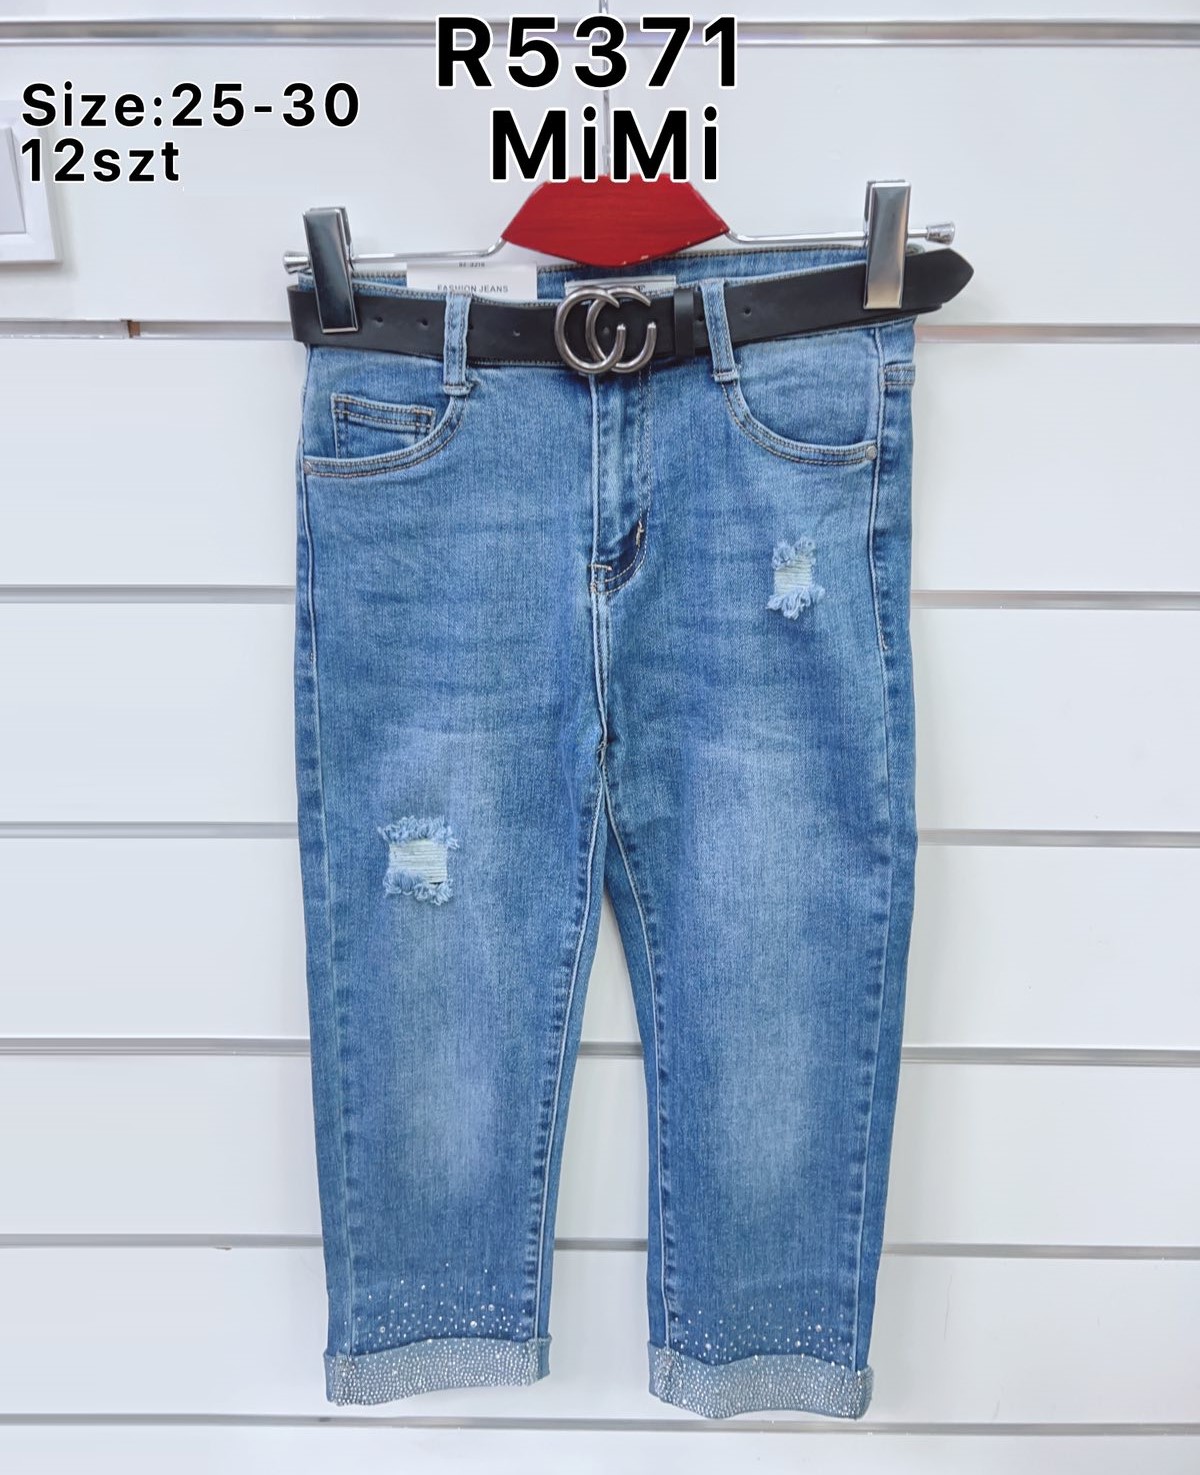 Spodnie  damskie jeans Roz  25-30   1 kolor . Paczka 12sz.t